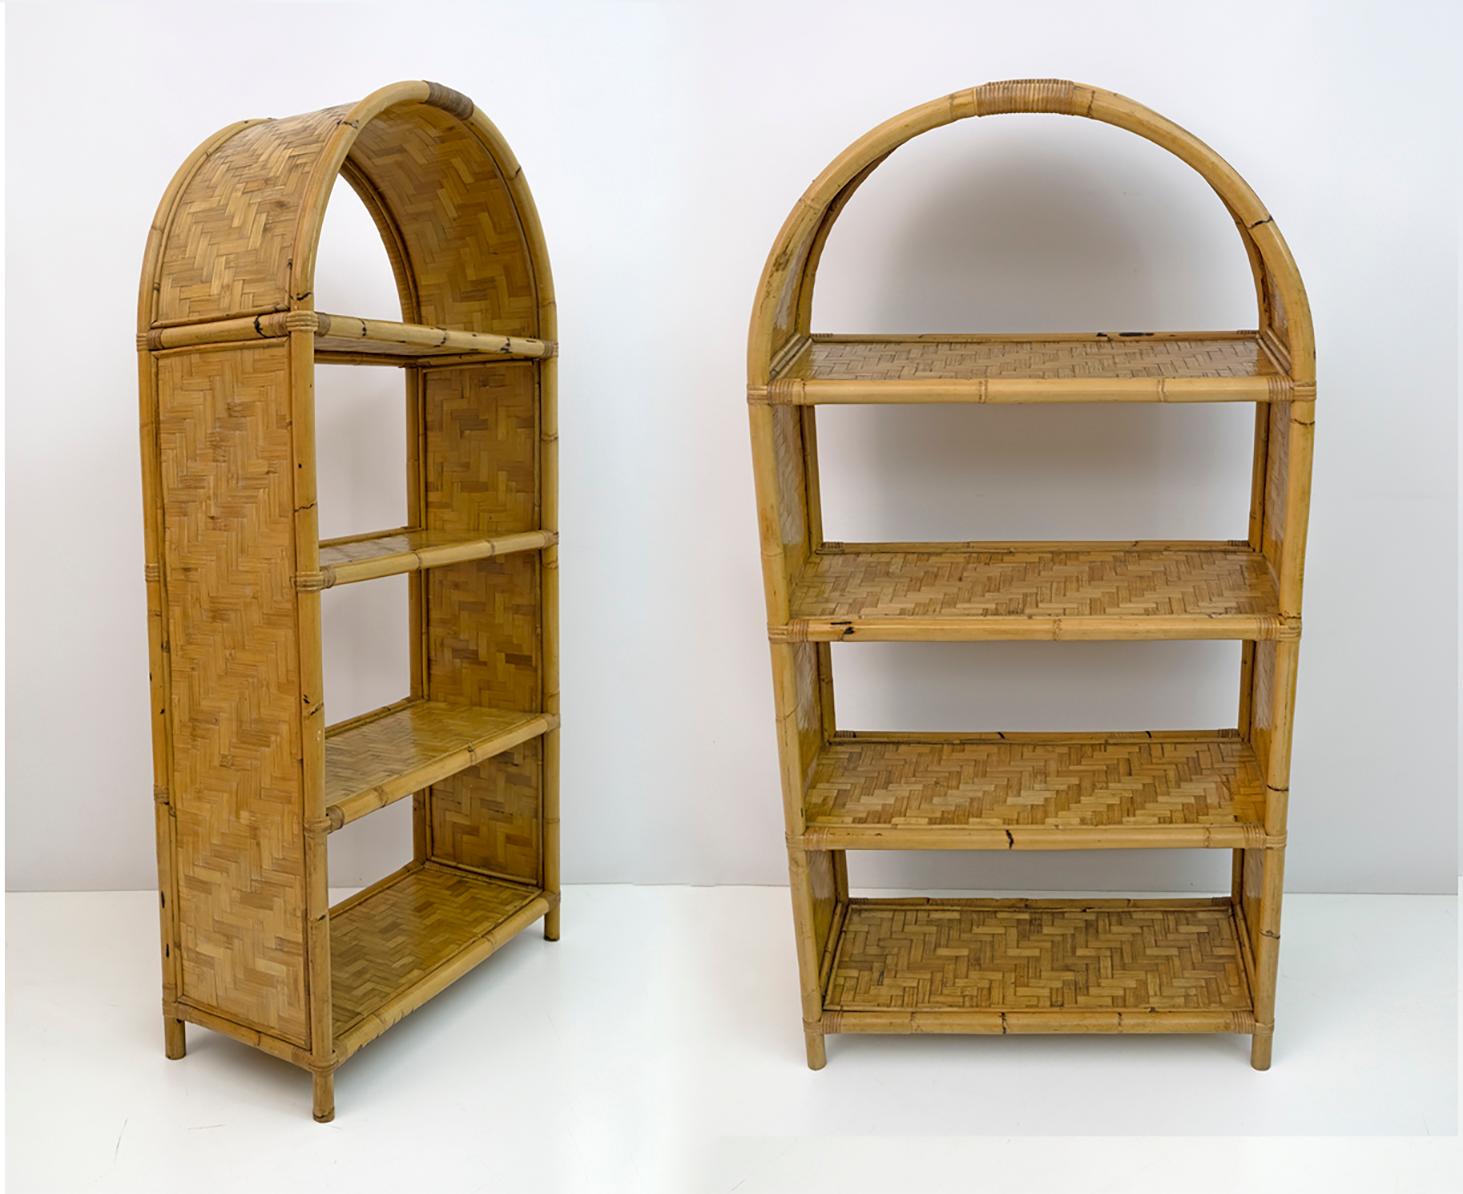 Magnifique paire de bibliothèques des années 1970. Les bibliothèques ont quatre étagères et sont réalisées en mosaïque de bambou.